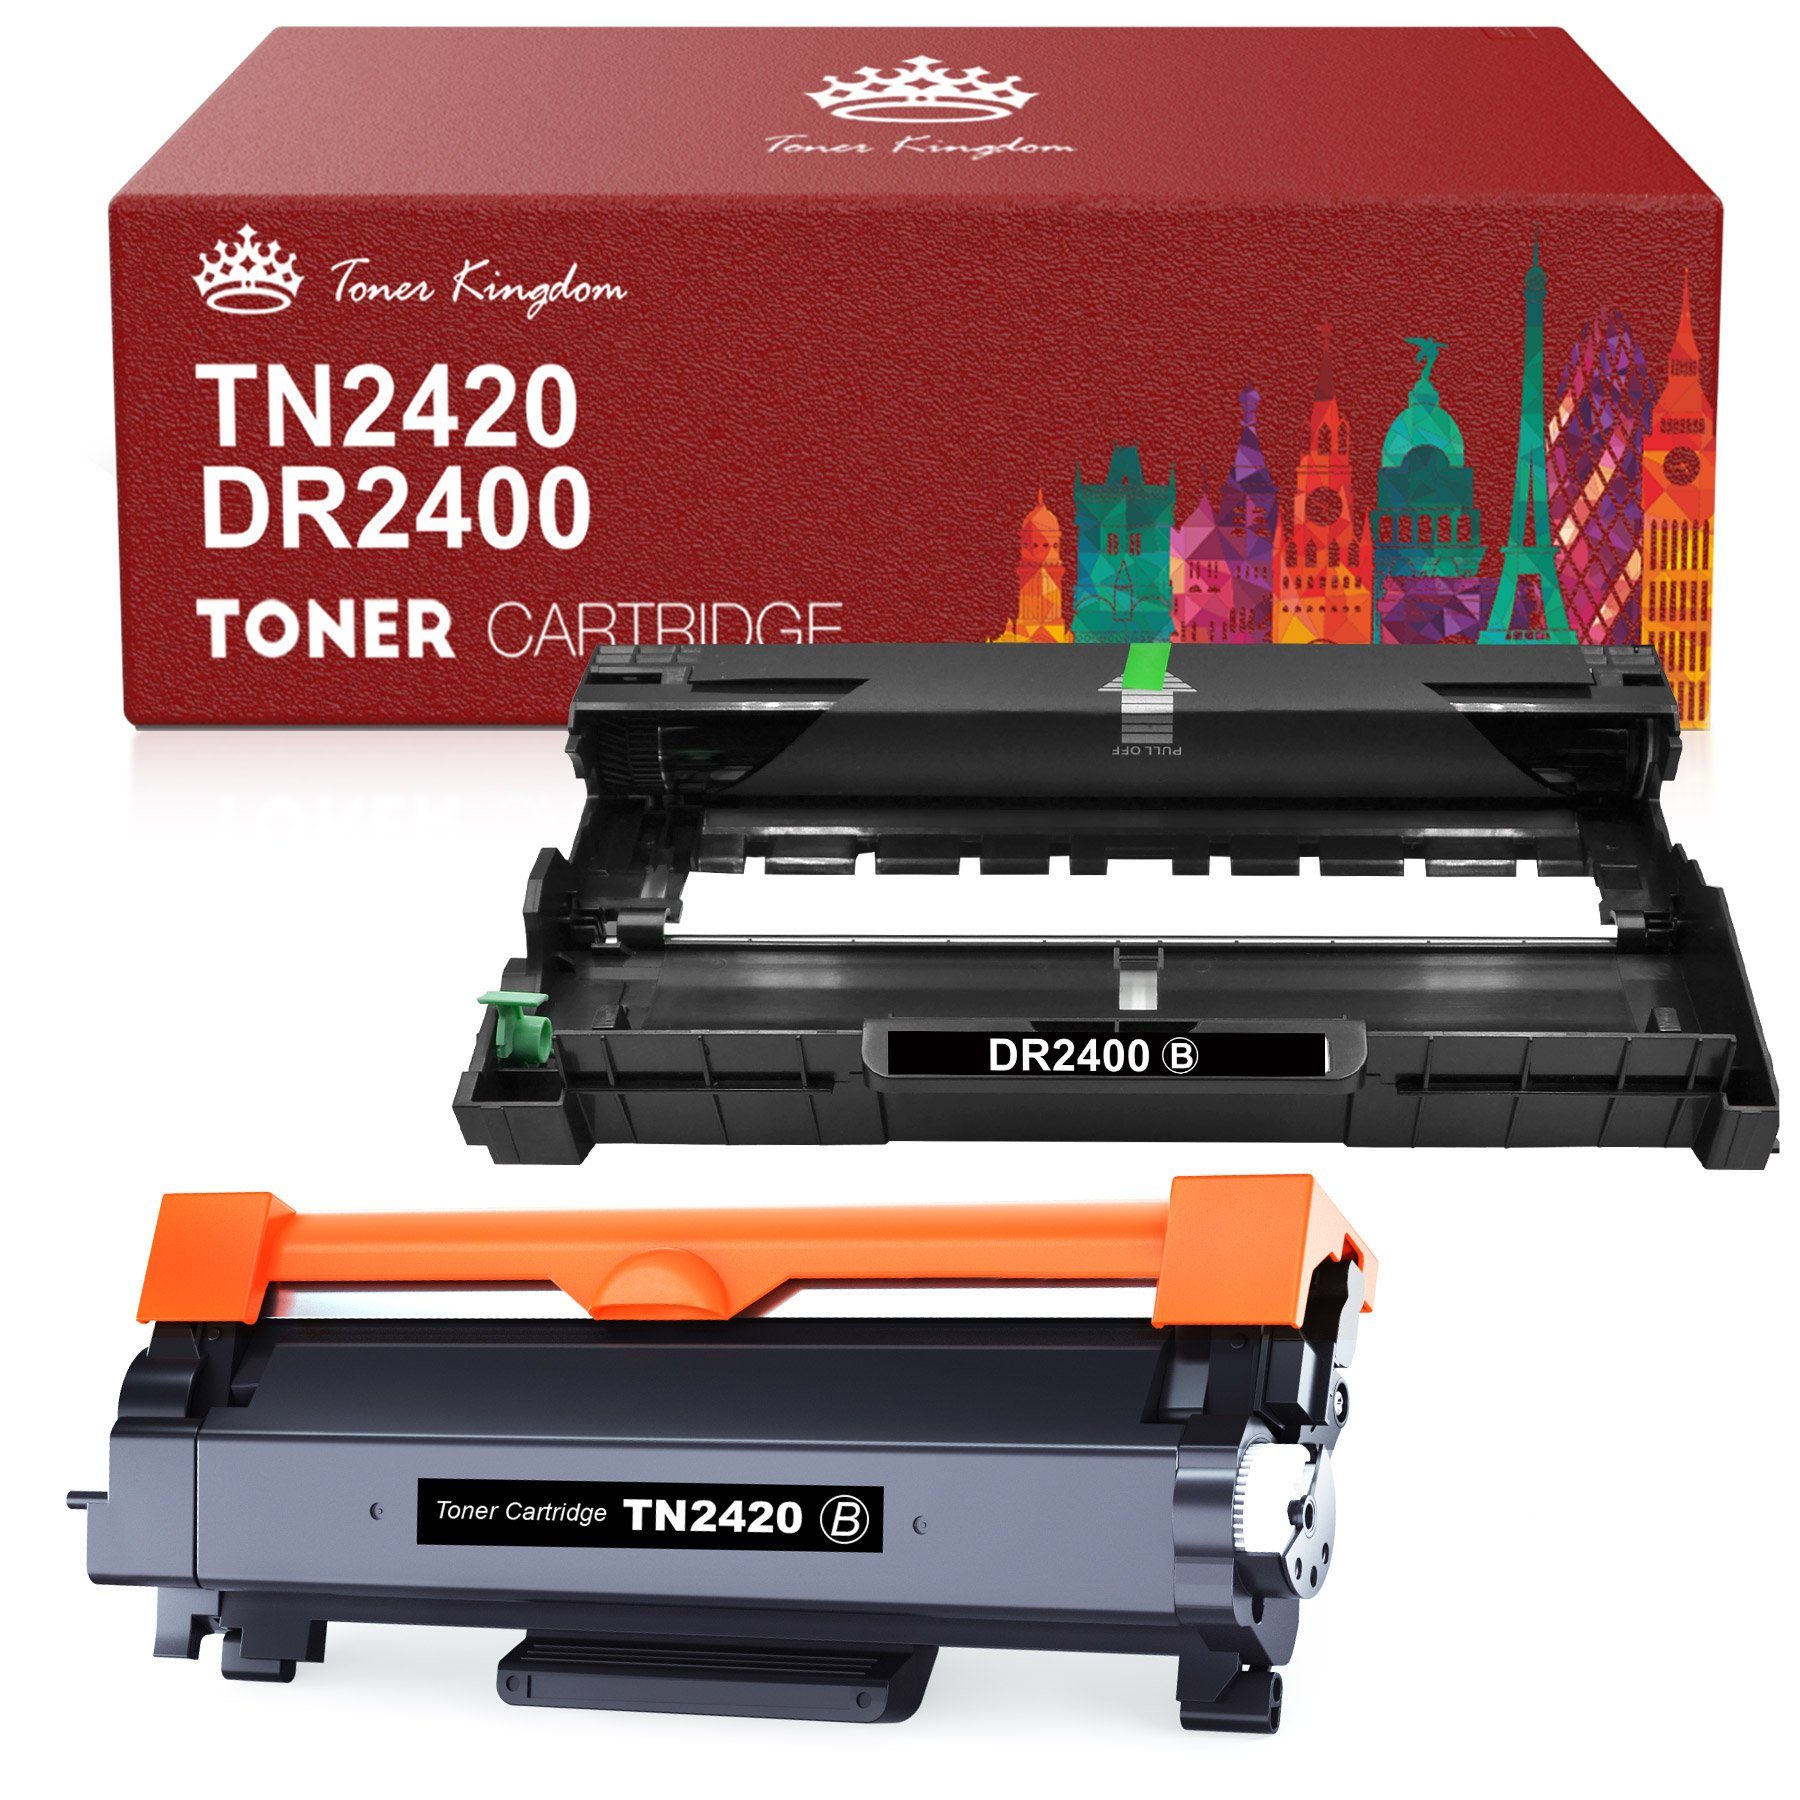 Toner Kingdom Tonerkartusche Trommel DR2400 für Brother TN-2420 Toner, (MFC-L2710 MFC-L2730 MFC-L2750 HL-L2310 HL-L2350), DCP-L2110 DCP-L2510 DCP-L2530 DCP-L2537 DCP-L2550